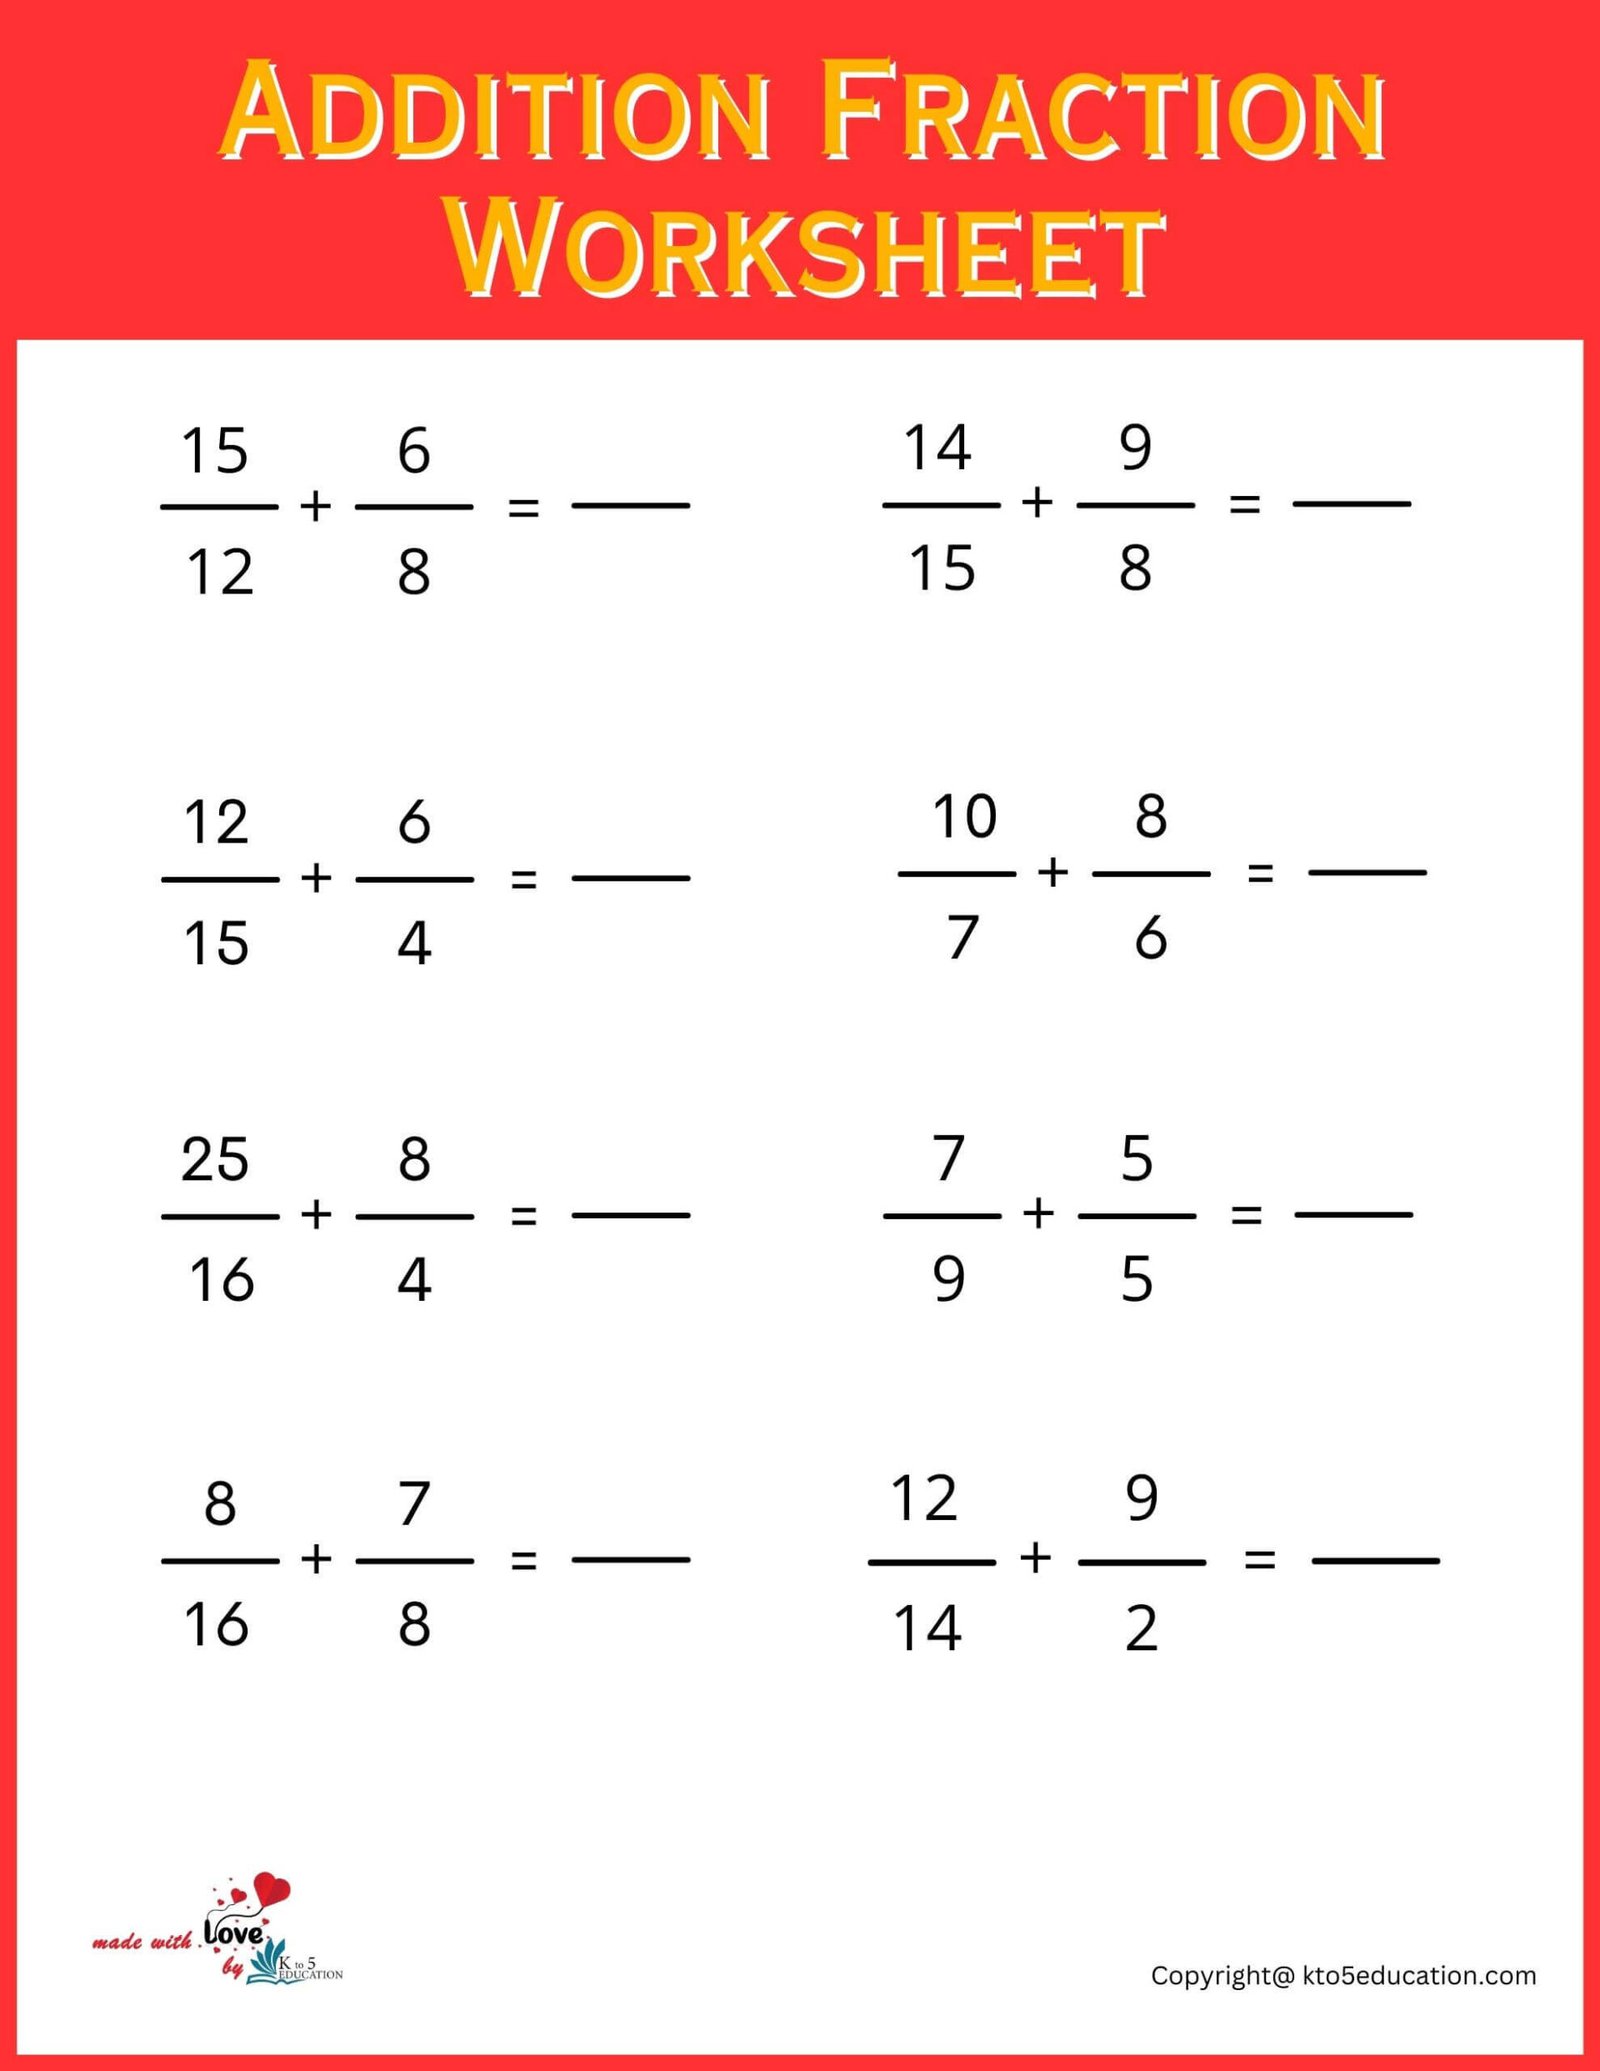 addition-fraction-worksheet-free-download